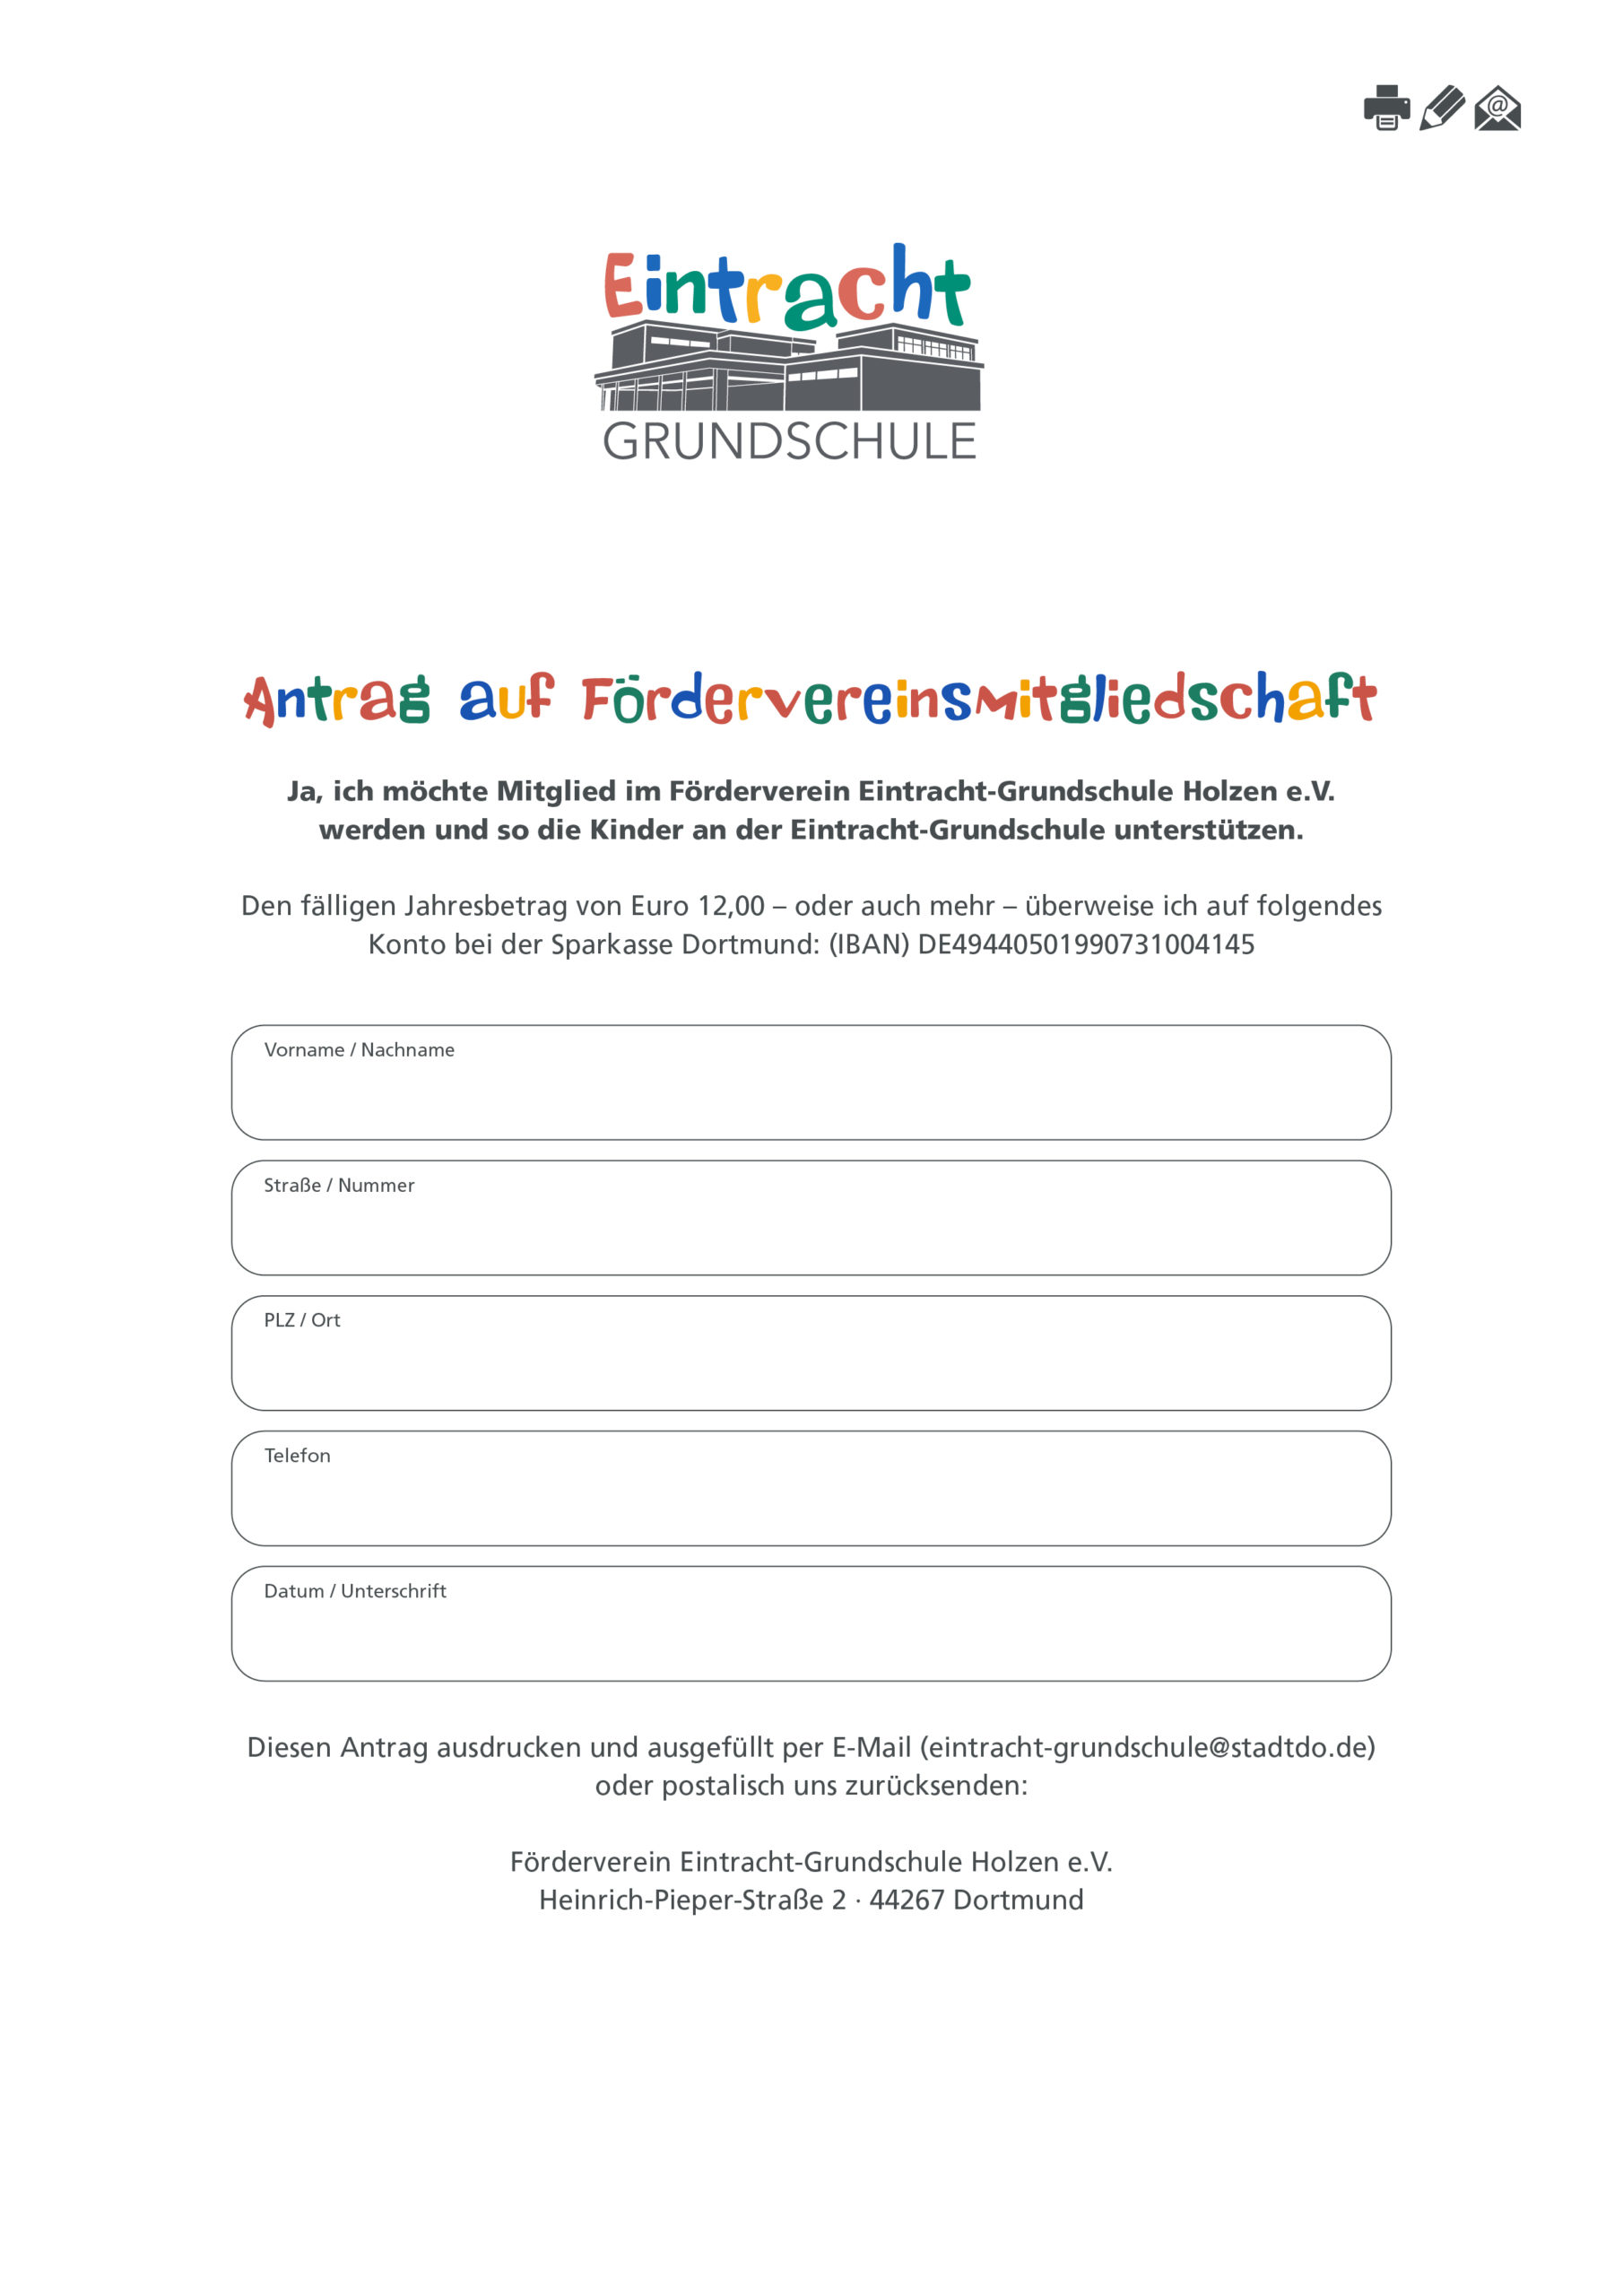 Antrag auf Mitgliedschaft im Förderverein Eintracht-Grundschule Holzen e.V.